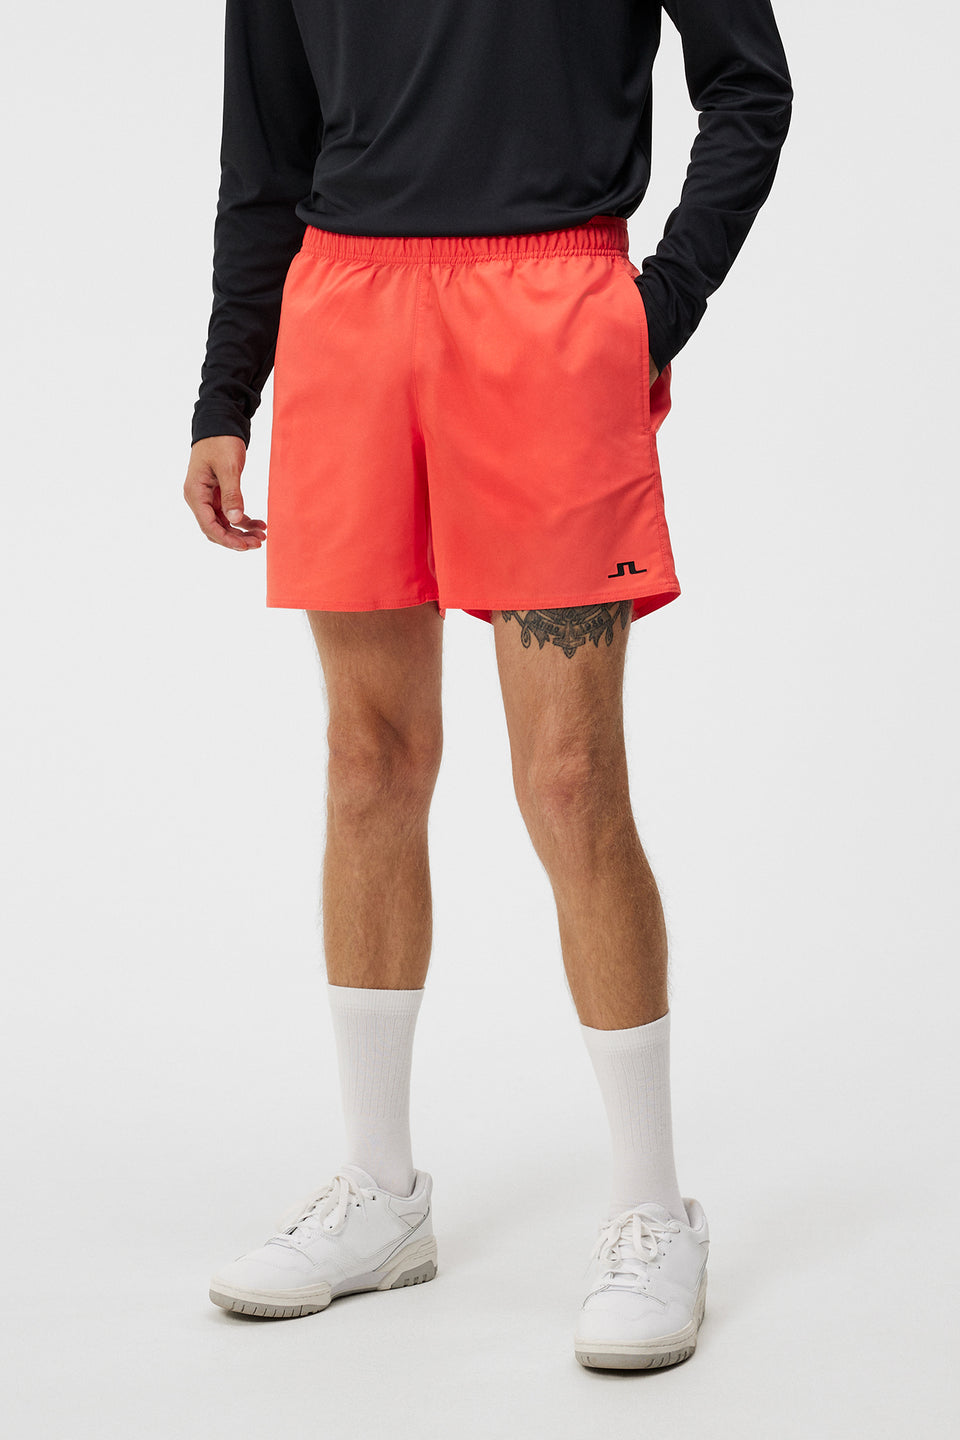 Preston Shorts / Hot Coral